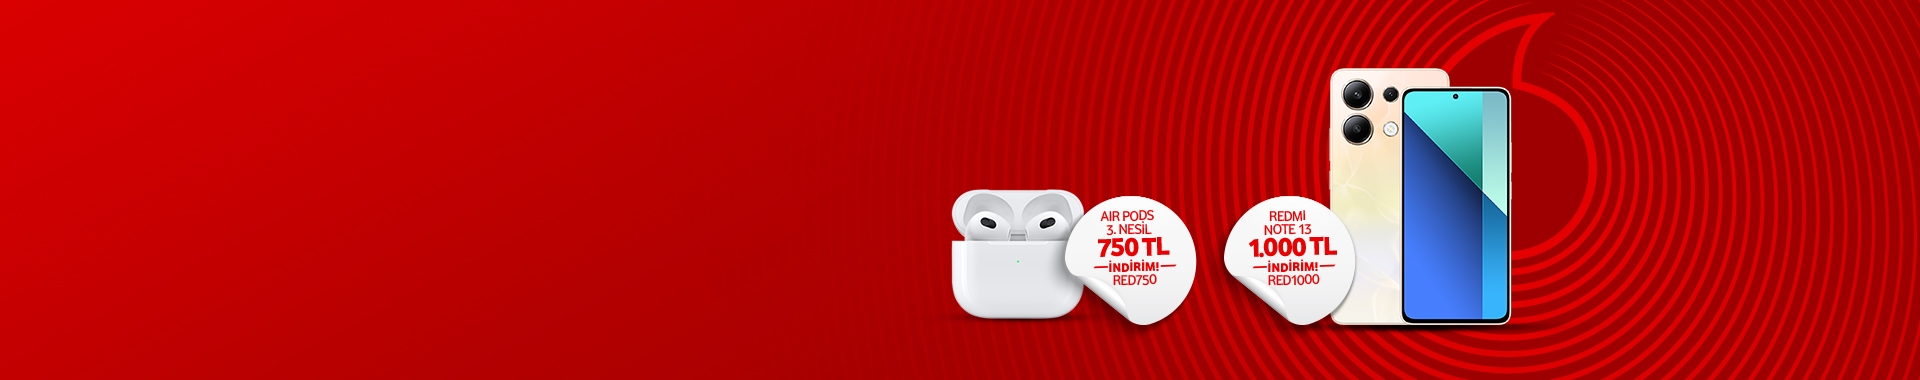 Red’lilere Özel Vodafone Flex Fırsatları!